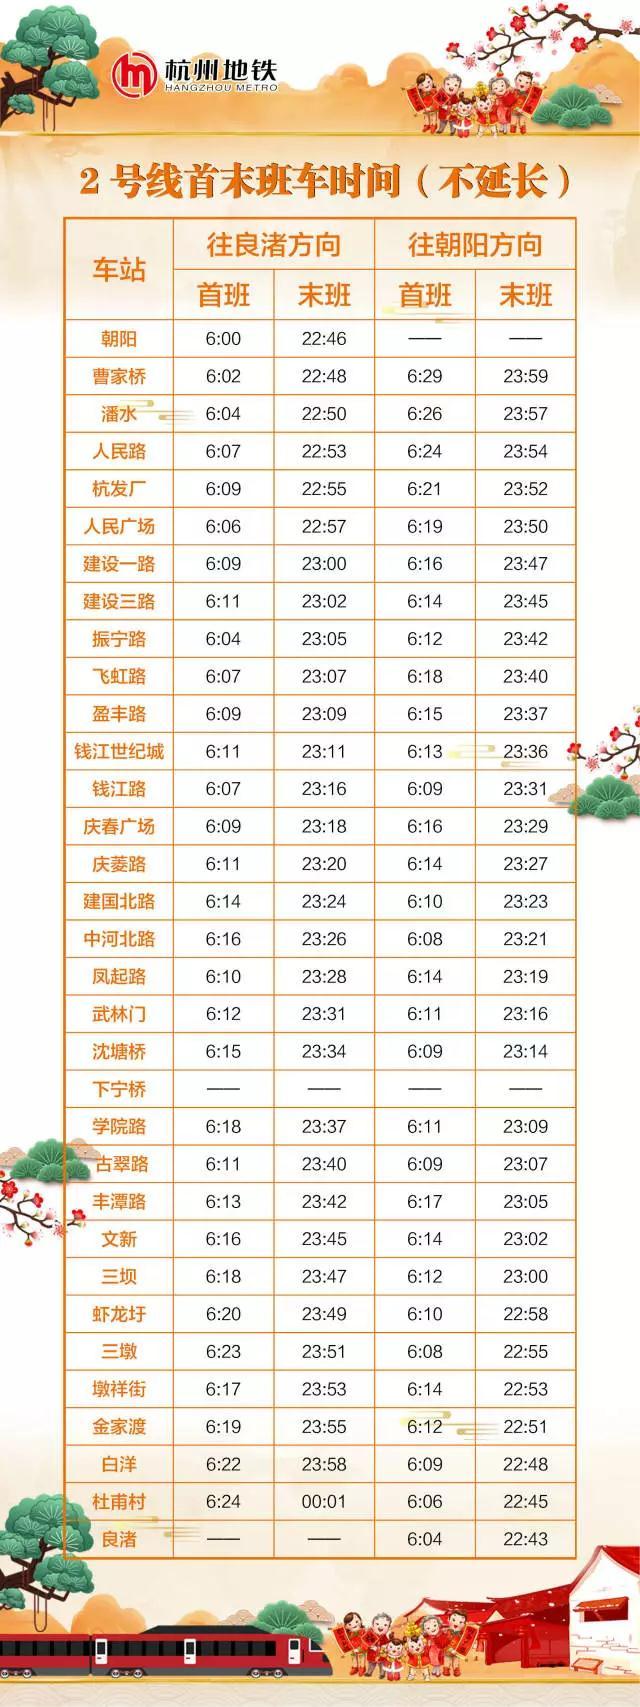 春运期间杭州地铁将延长运营 运营时刻表看这里